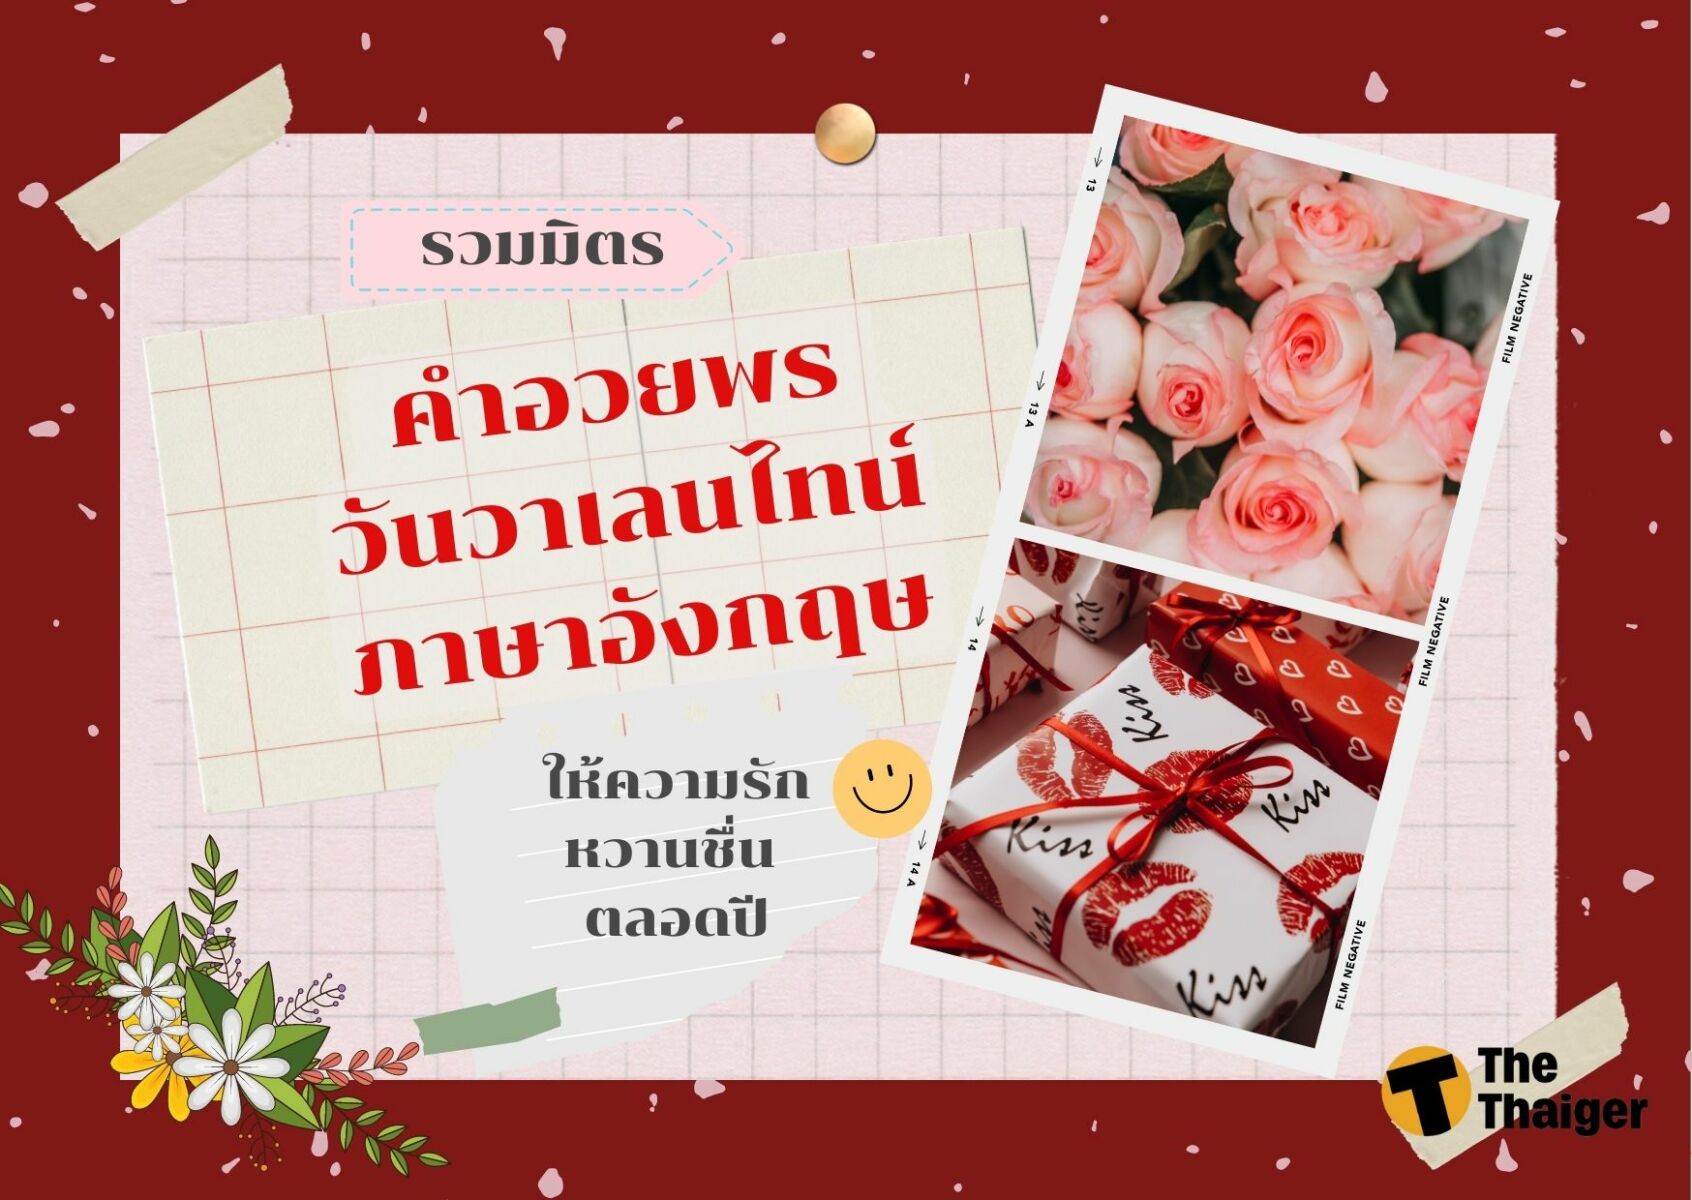 รวมลิสต์ คําอวยพร วันวาเลนไทน์ ภาษาอังกฤษ ให้ความรักหวานชื่น ตลอดปี |  Thaiger ข่าวไทย